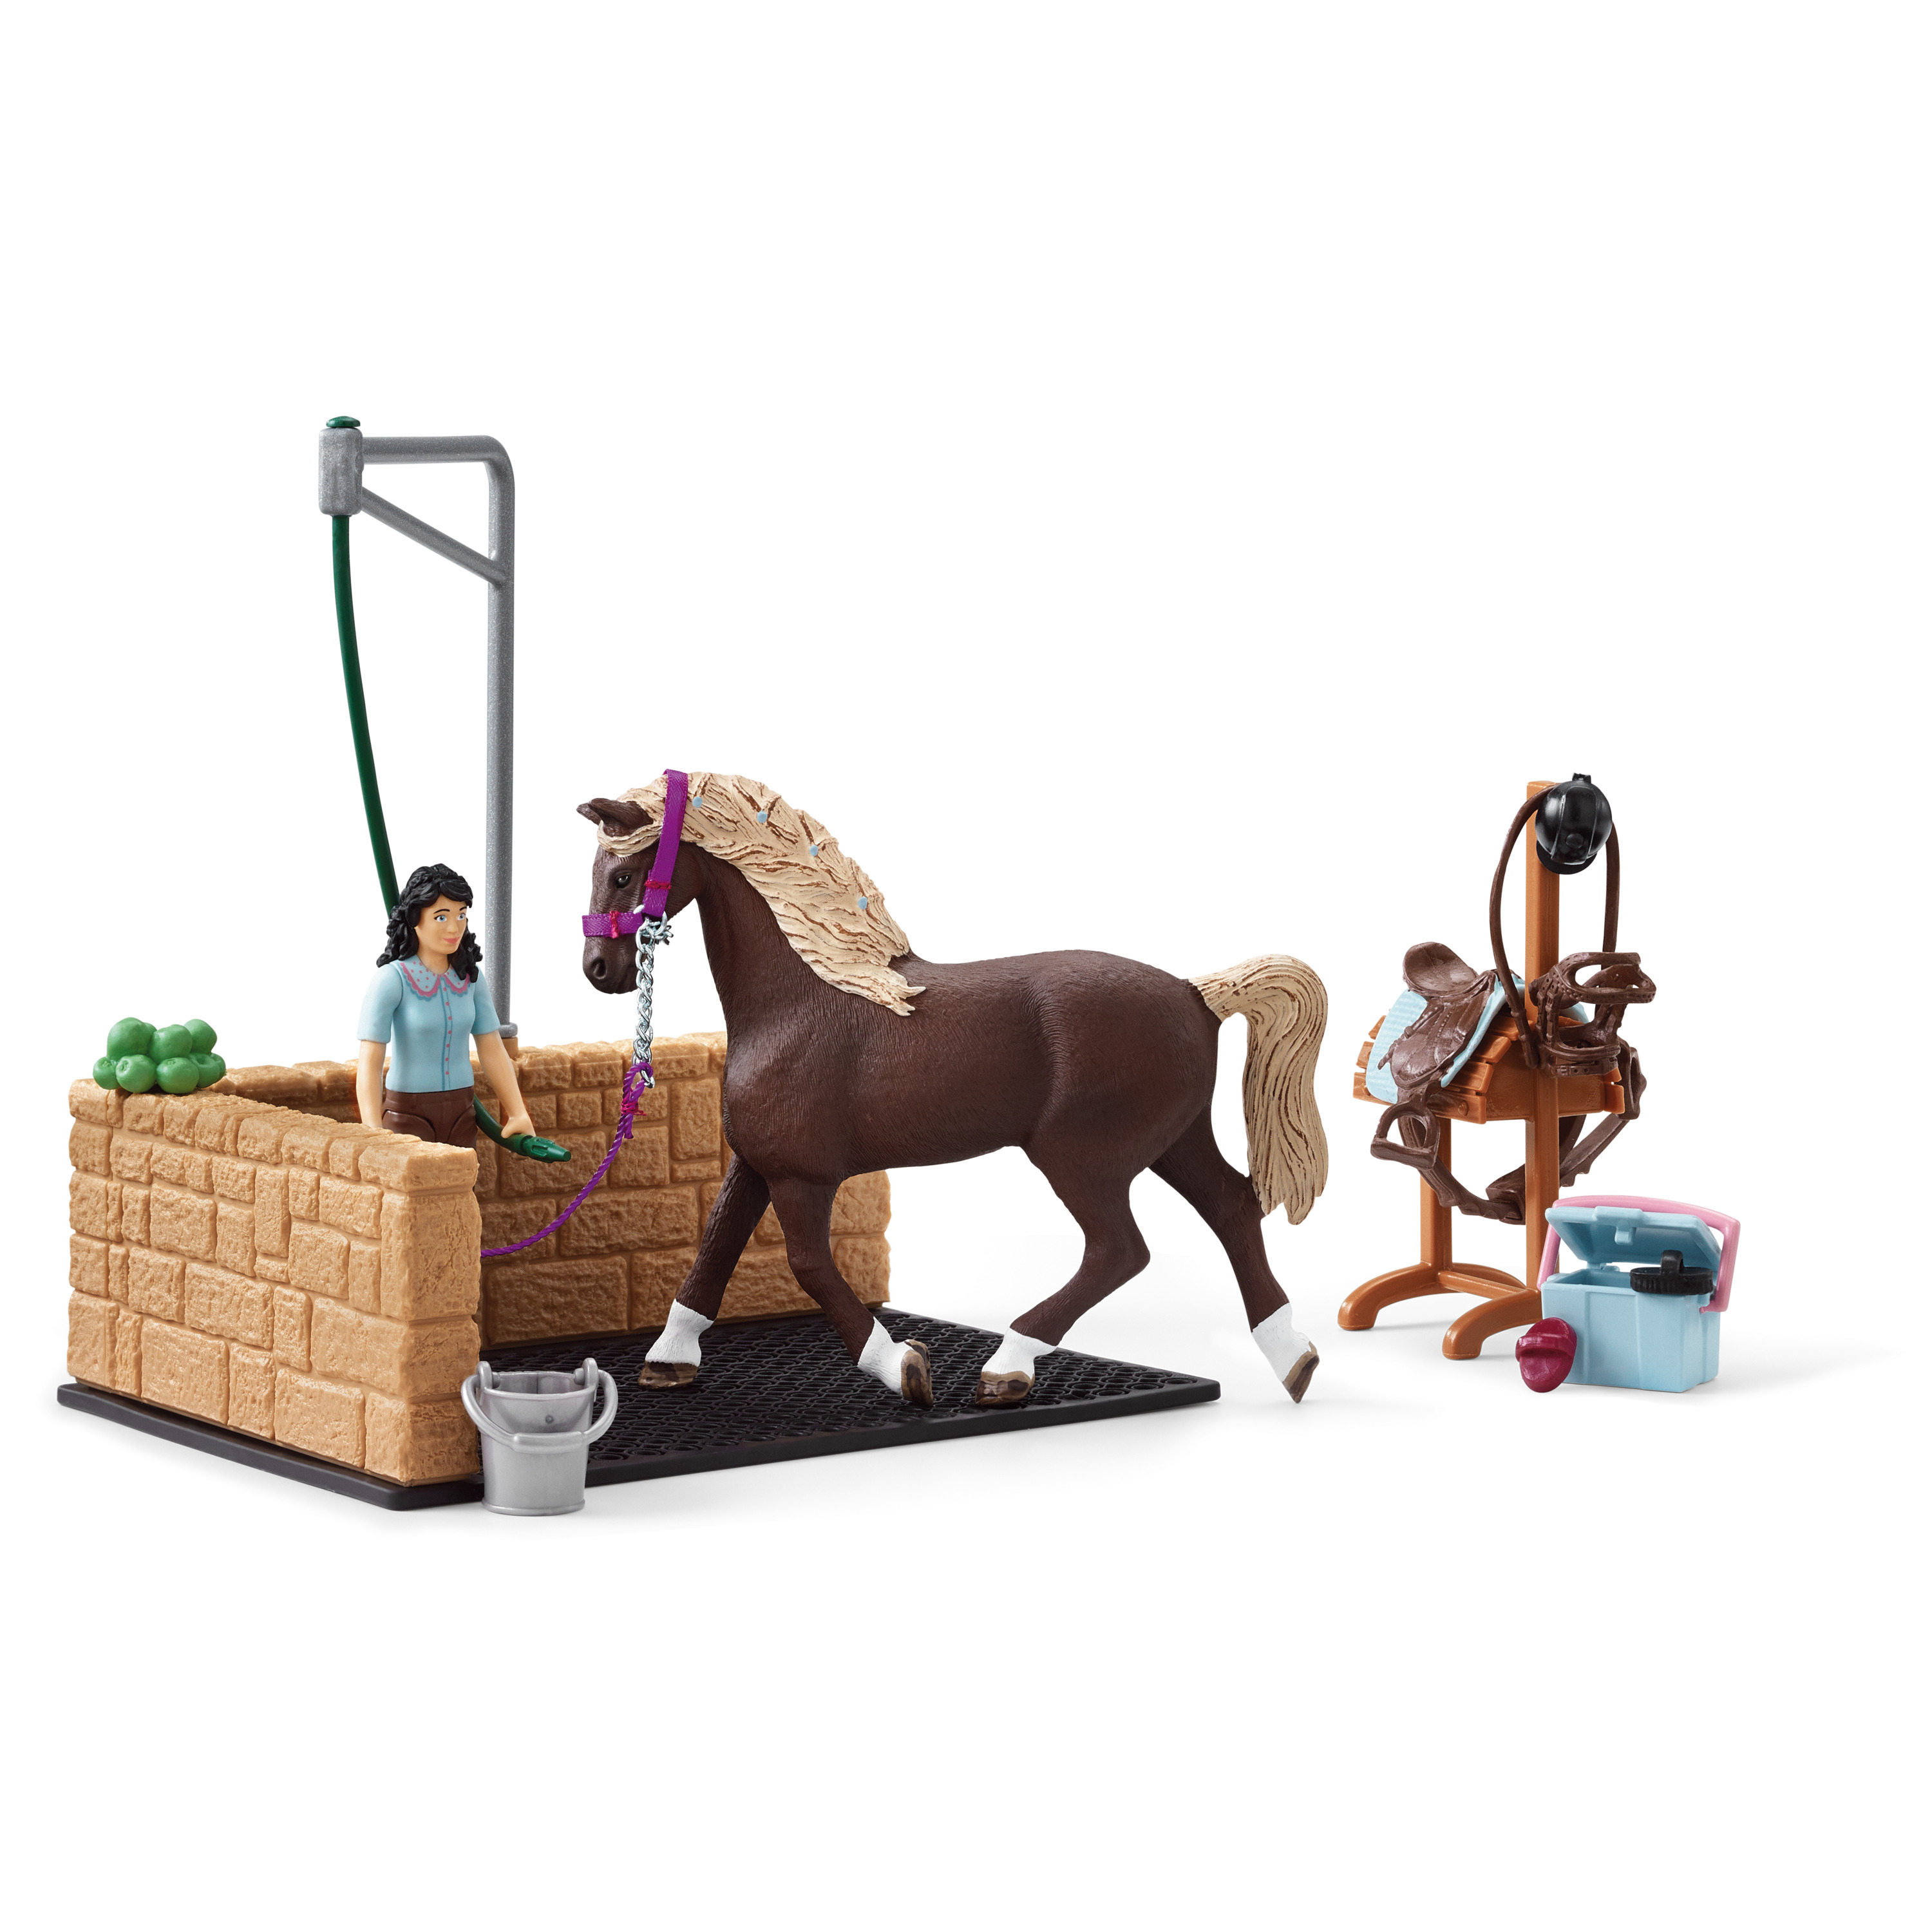 Schleich Jouet Set de figurines de chevaux avec personnages